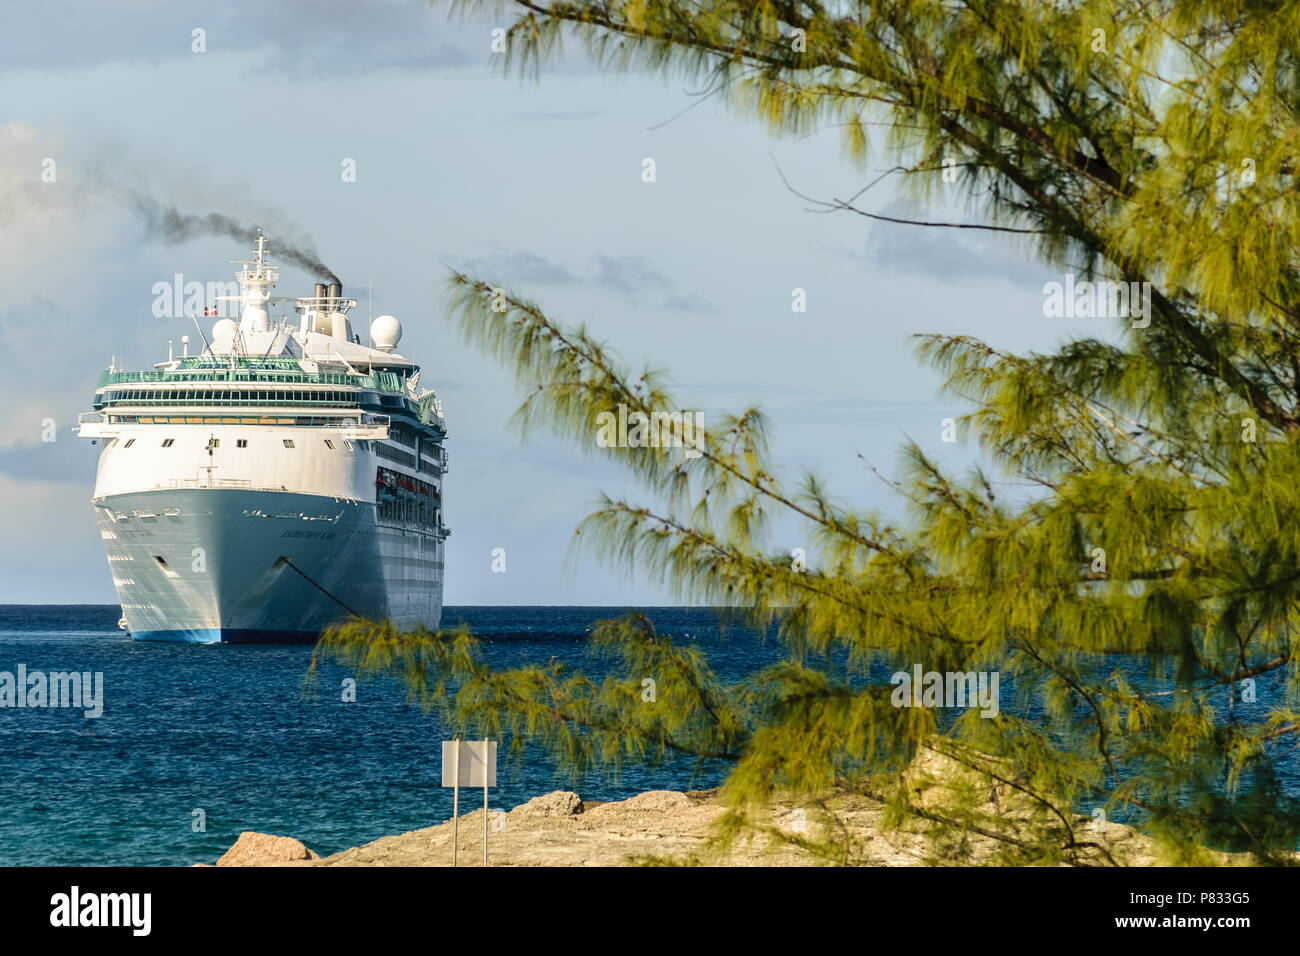 CoCo Cay, Bahamas - 01 décembre 2015 : Royal Caribbean Enchantment of the Seas bateau de croisière lancés en Coco Cay, Bahamas. Banque D'Images